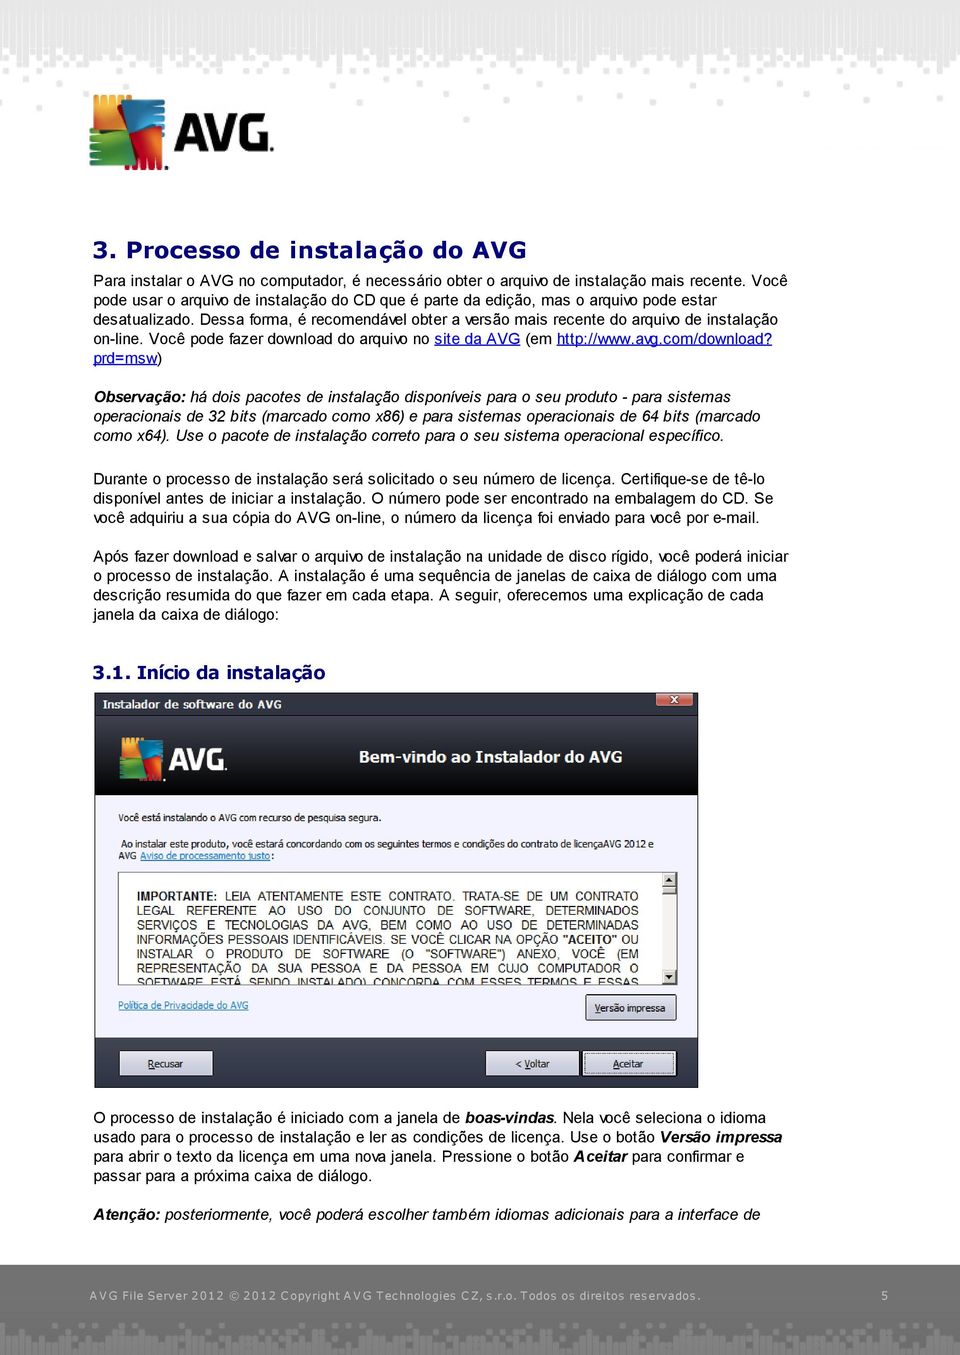 Você pode fazer download do arquivo no site da AVG (em http://www.avg.com/download?